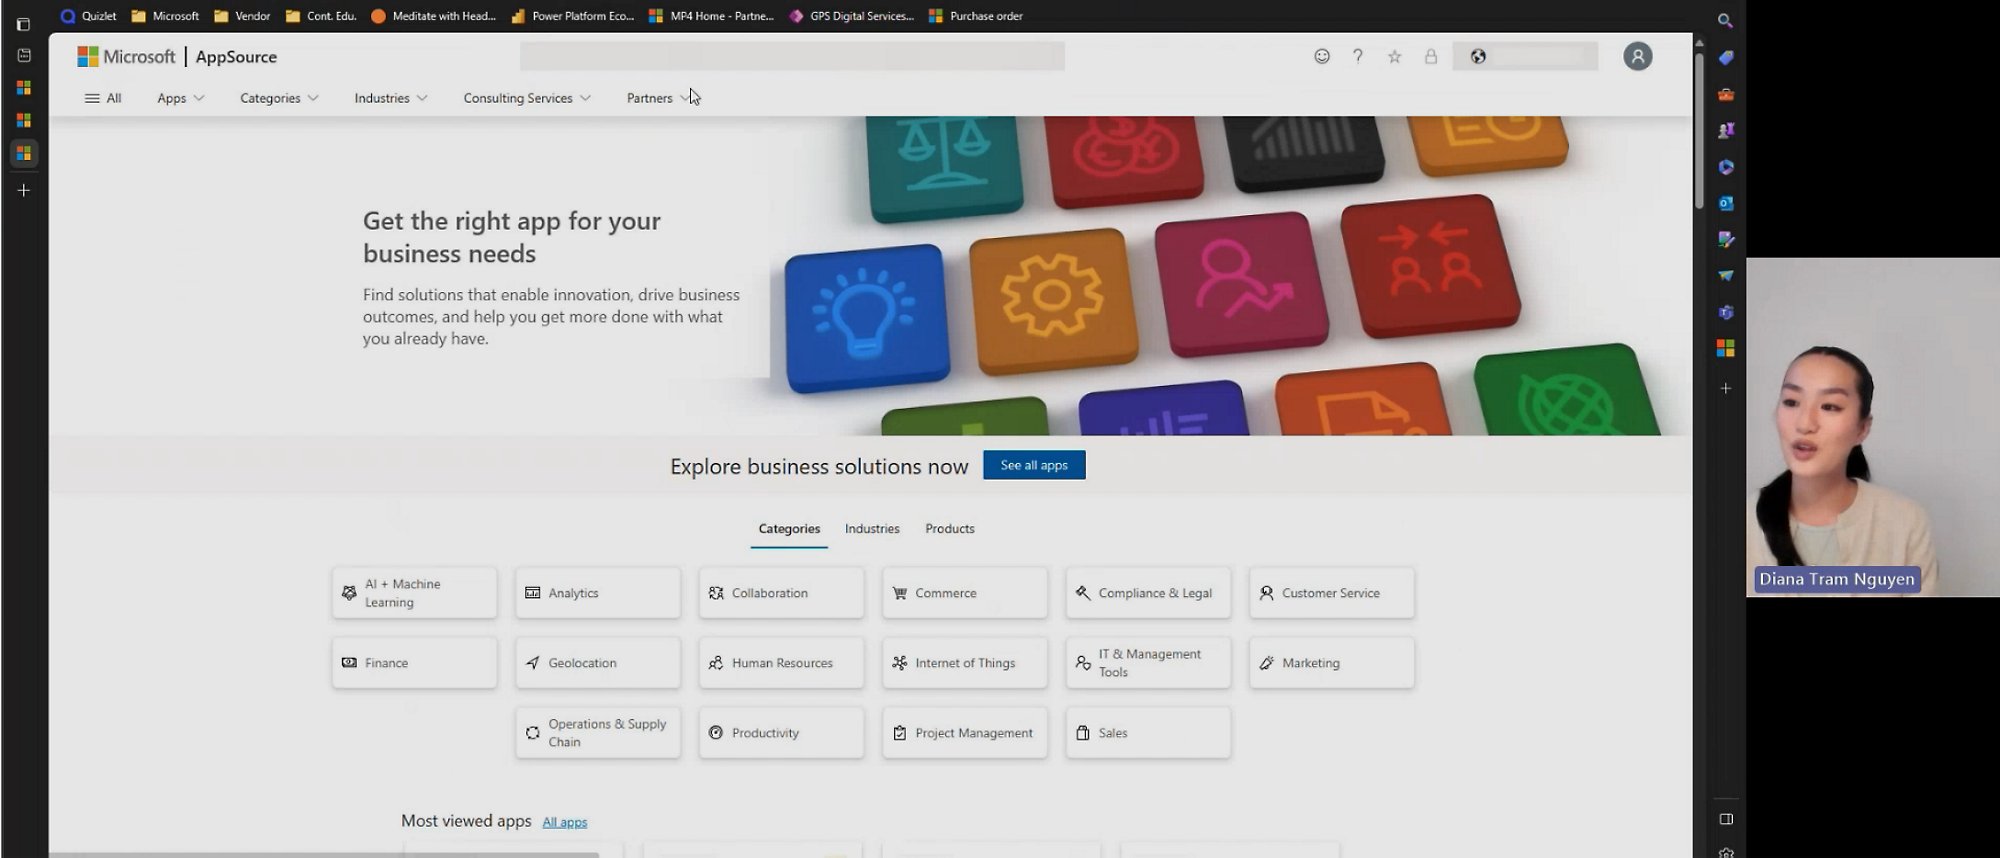 Snimak ekrana video zapisa koji prikazuje stranicu u odeljku Microsoft AppSource koja se odnosi na istraživanje poslovnih rešenja